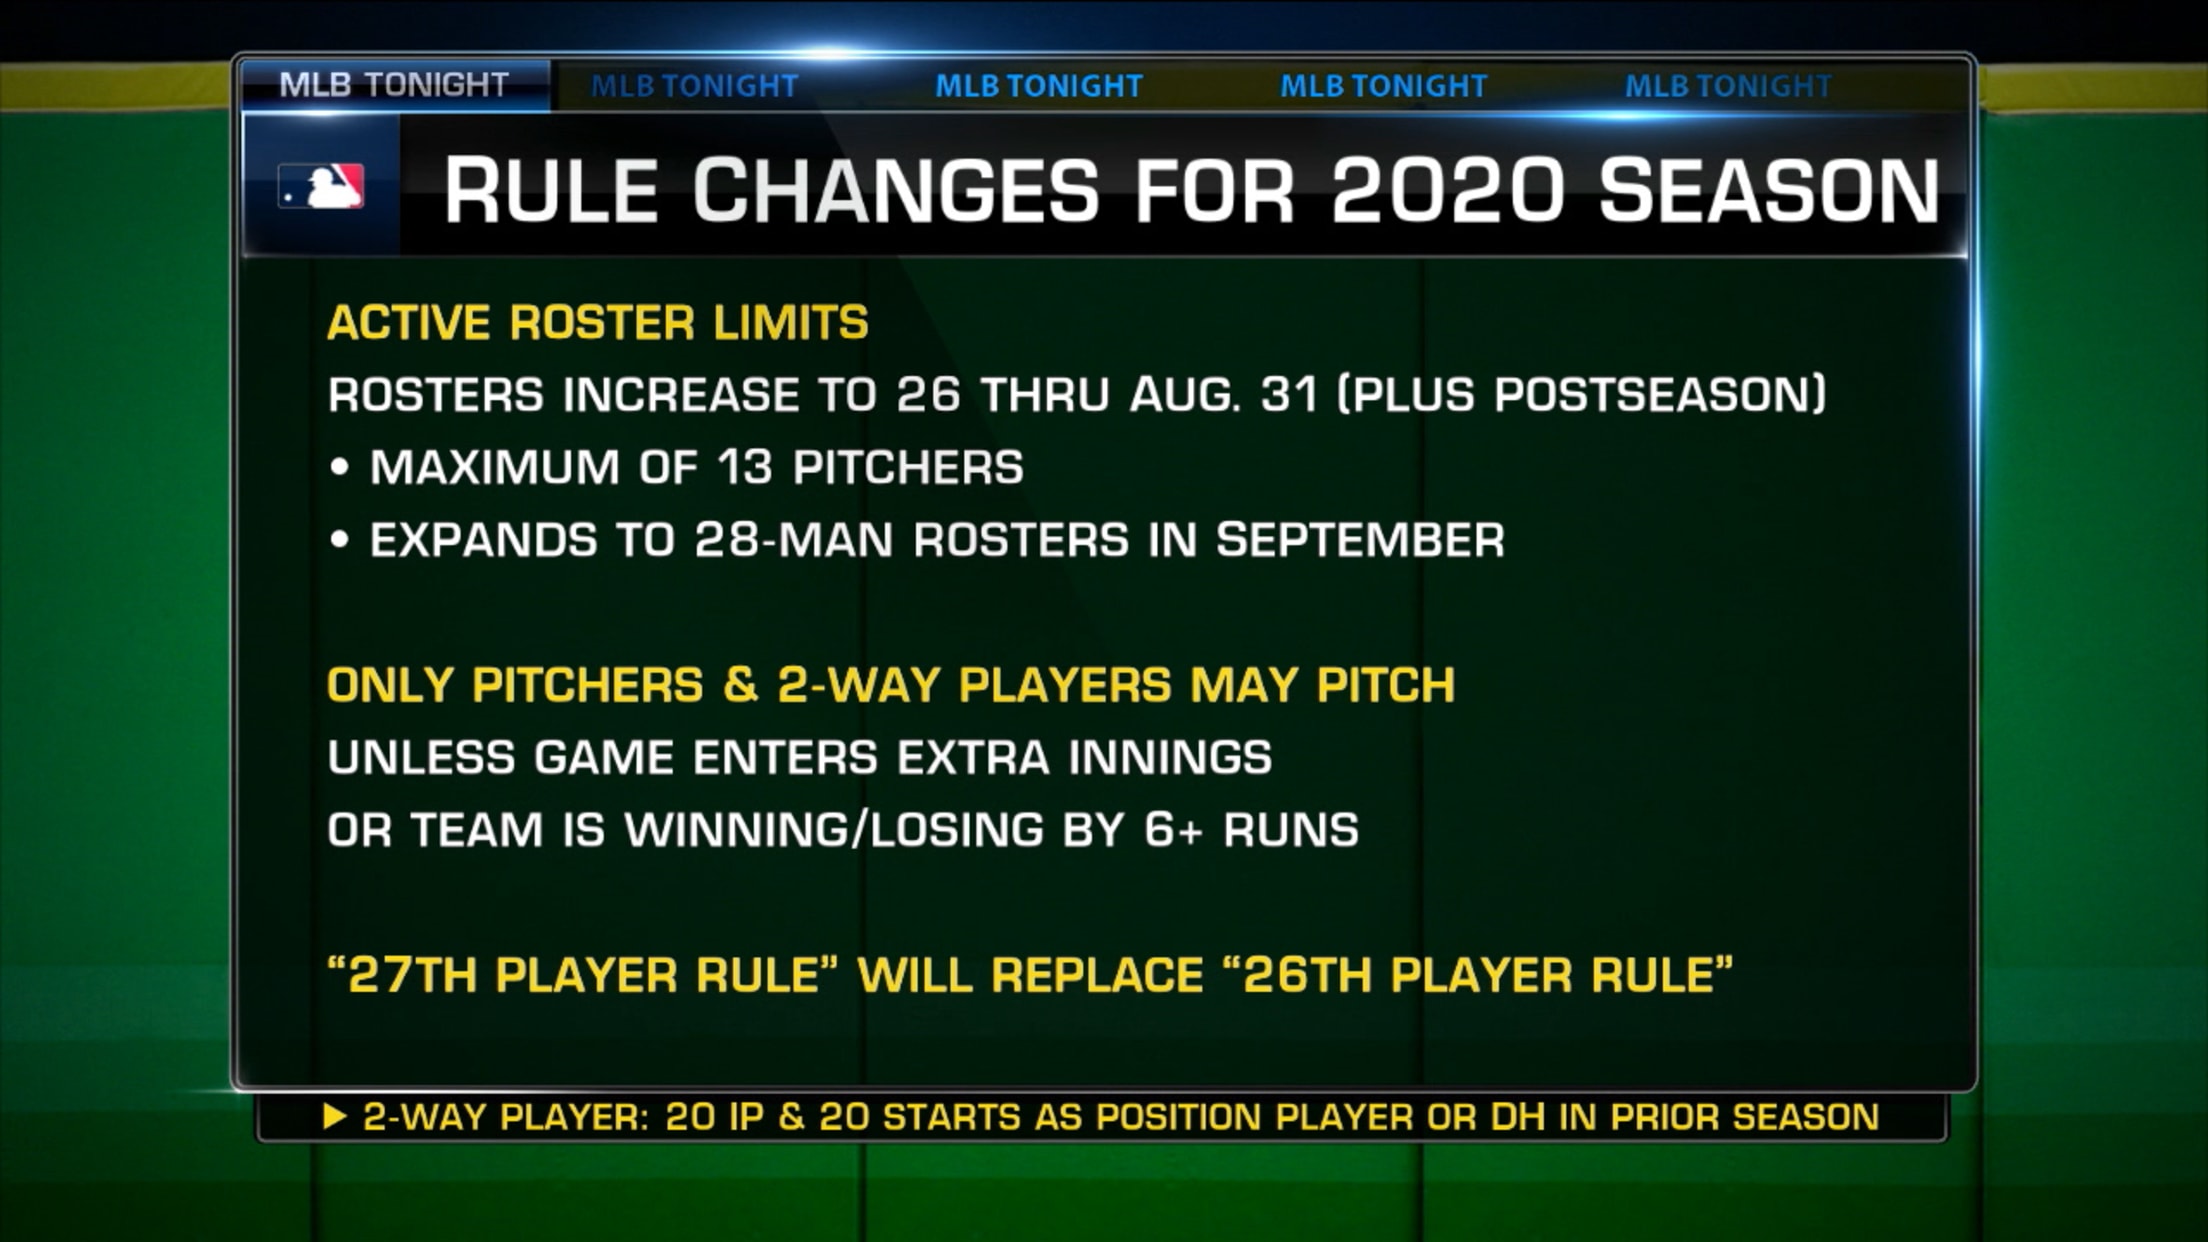 MLB Stasera sulle nuove modifiche alle regole